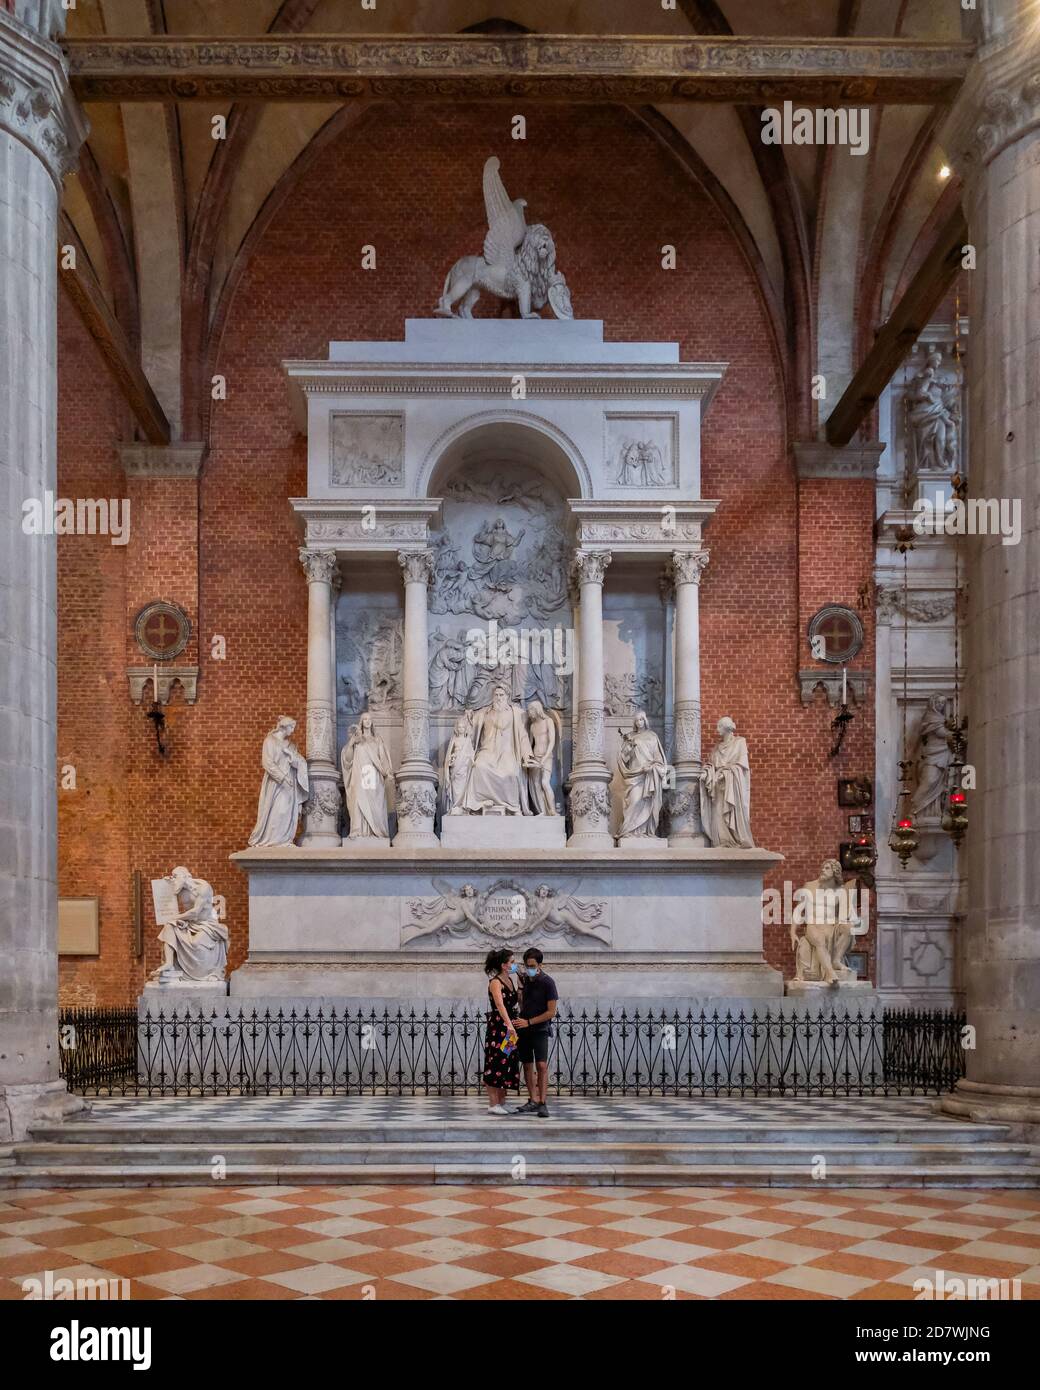 Una coppia all'interno di Santa Maria gloriosa dei Basilica di Frari - enorme chiesa francescana gotica veneziana in mattoni rossi Foto Stock